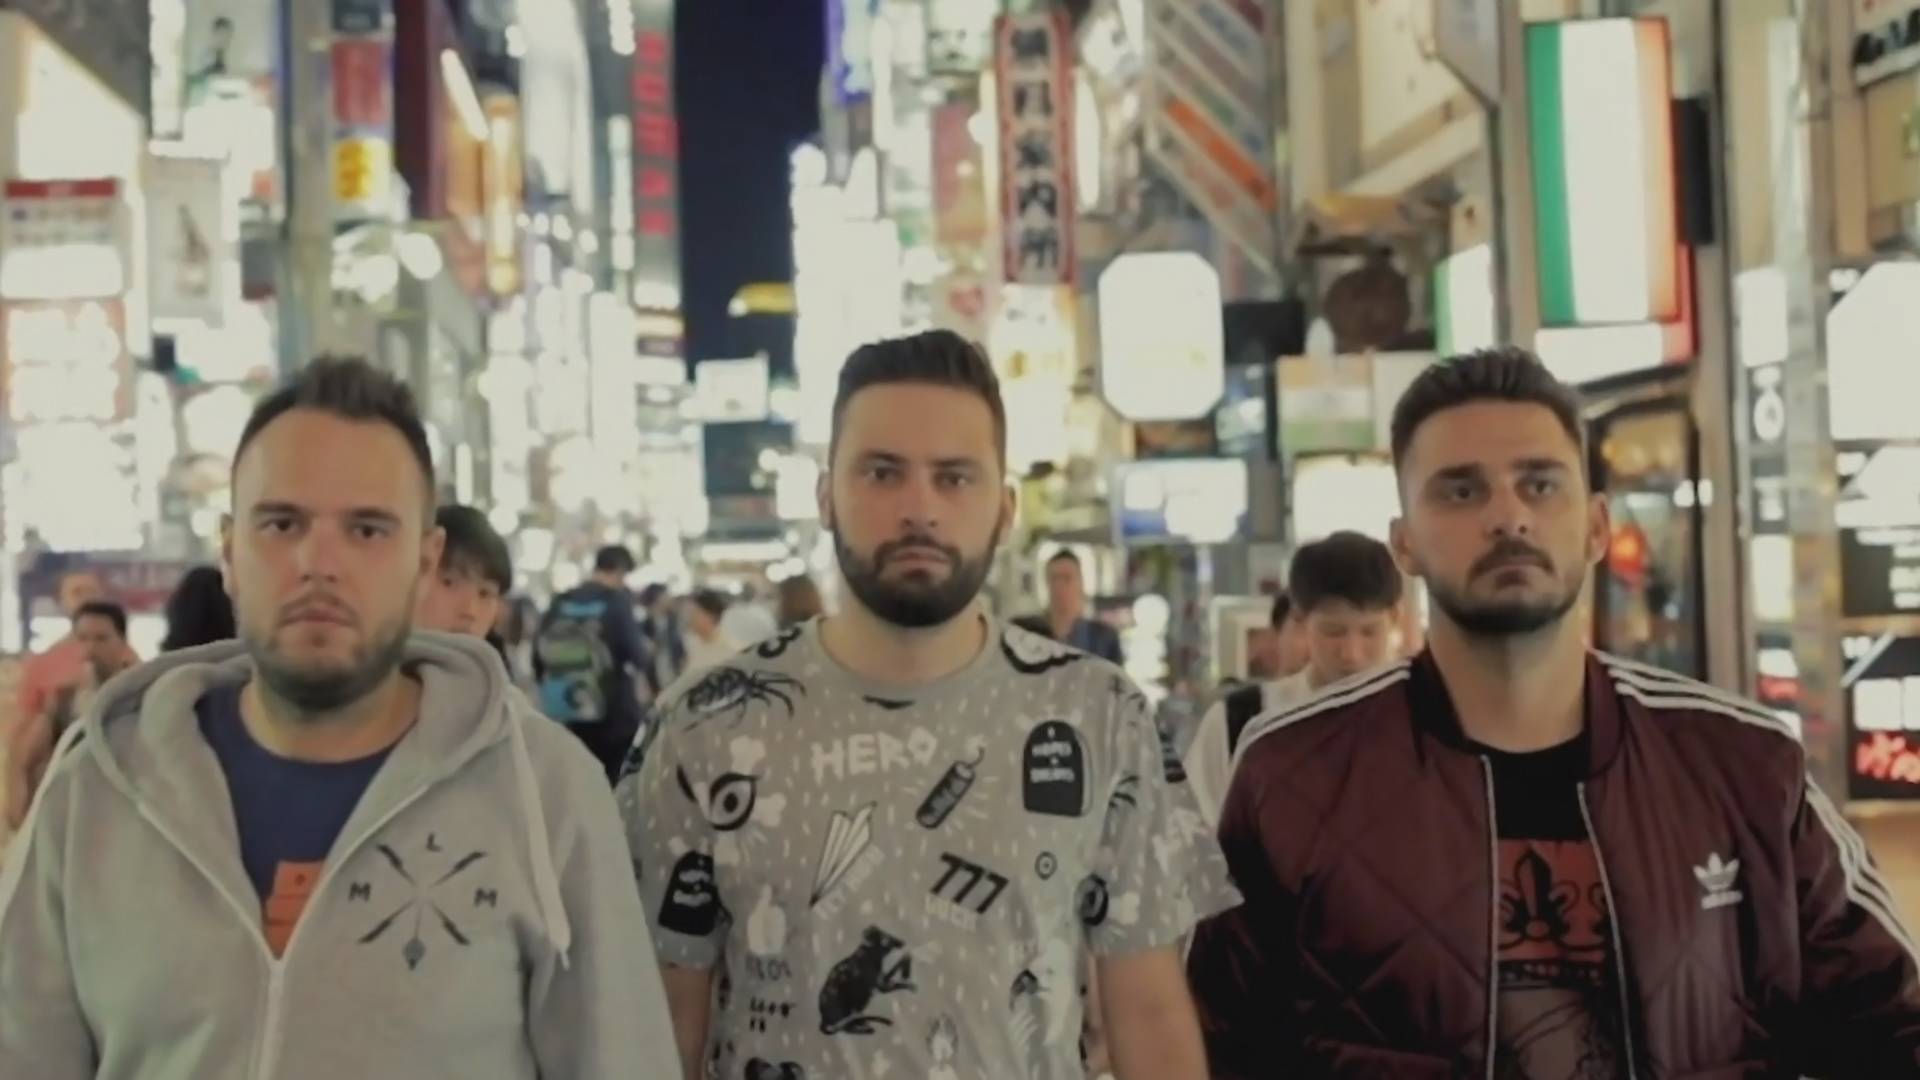 Bosanski rep trojac Frenkie, Kontra i Indigo snimili spot za novi singl "Đe Će Ko" u Tokiju